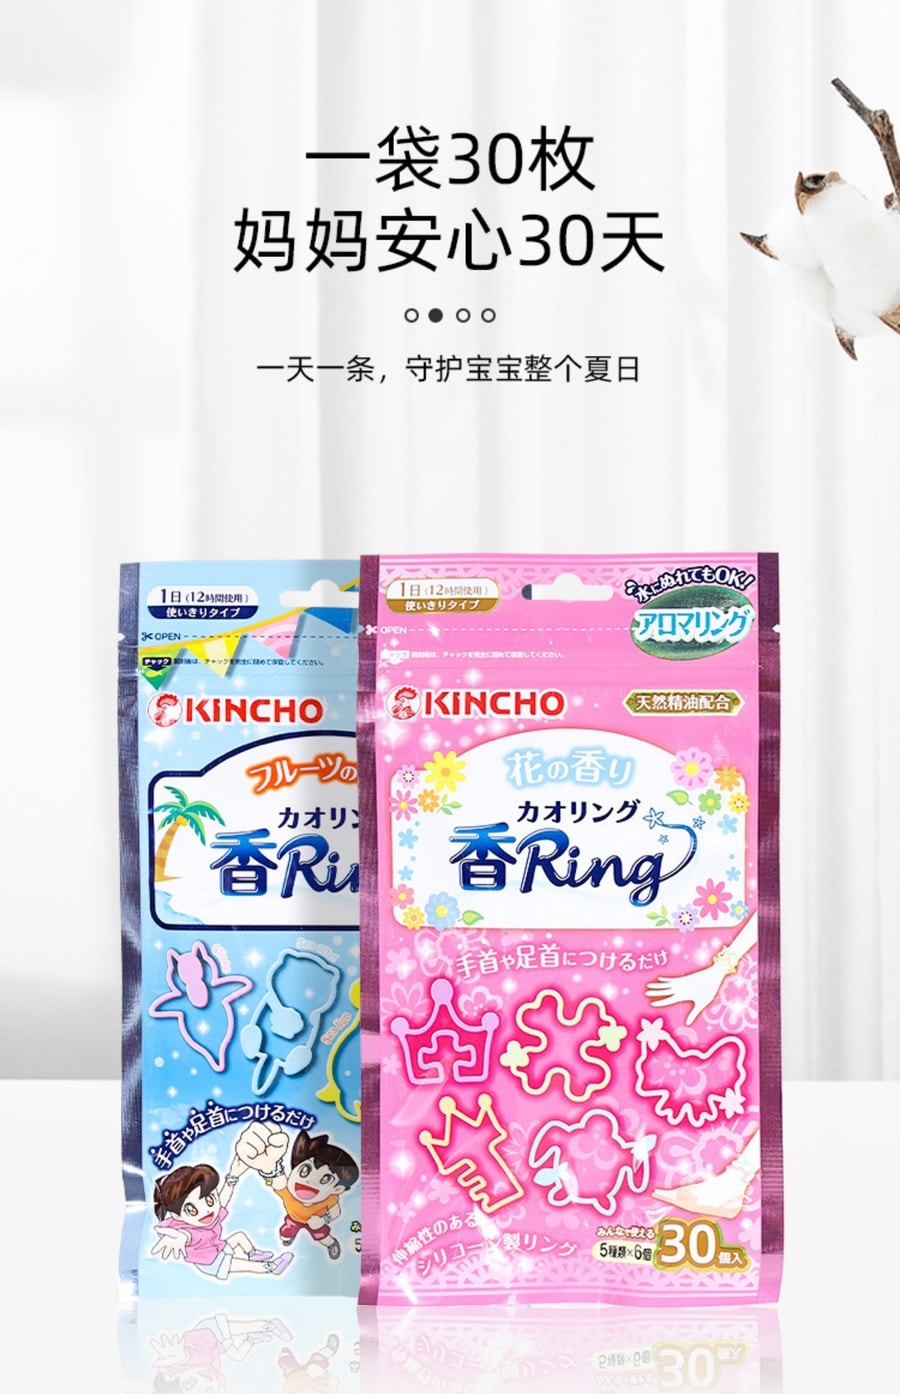 【日本直效郵件】KINCHO 金鳥 驅蚊 驅蟲手環 天然成分 成人 兒童皆可使用 30入 粉紅色花香